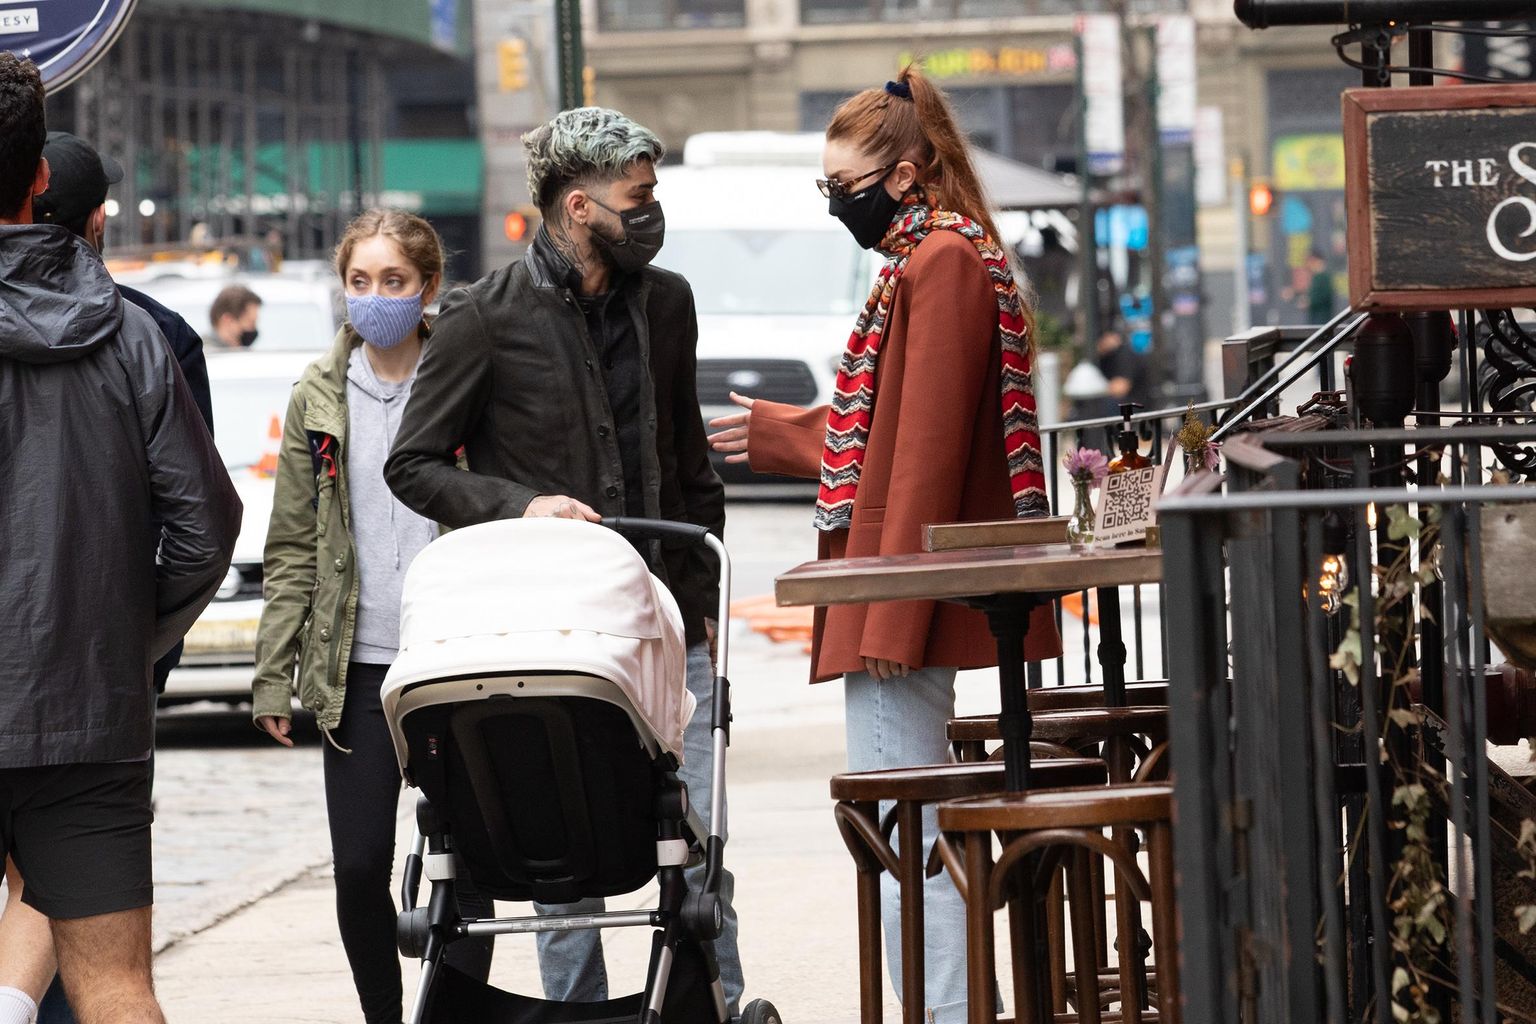 Endine poistebändi liige Zayn Malik ja supermodellist kallim Gigi Hadid lapsega New Yorgi tänavatel jalutamas.